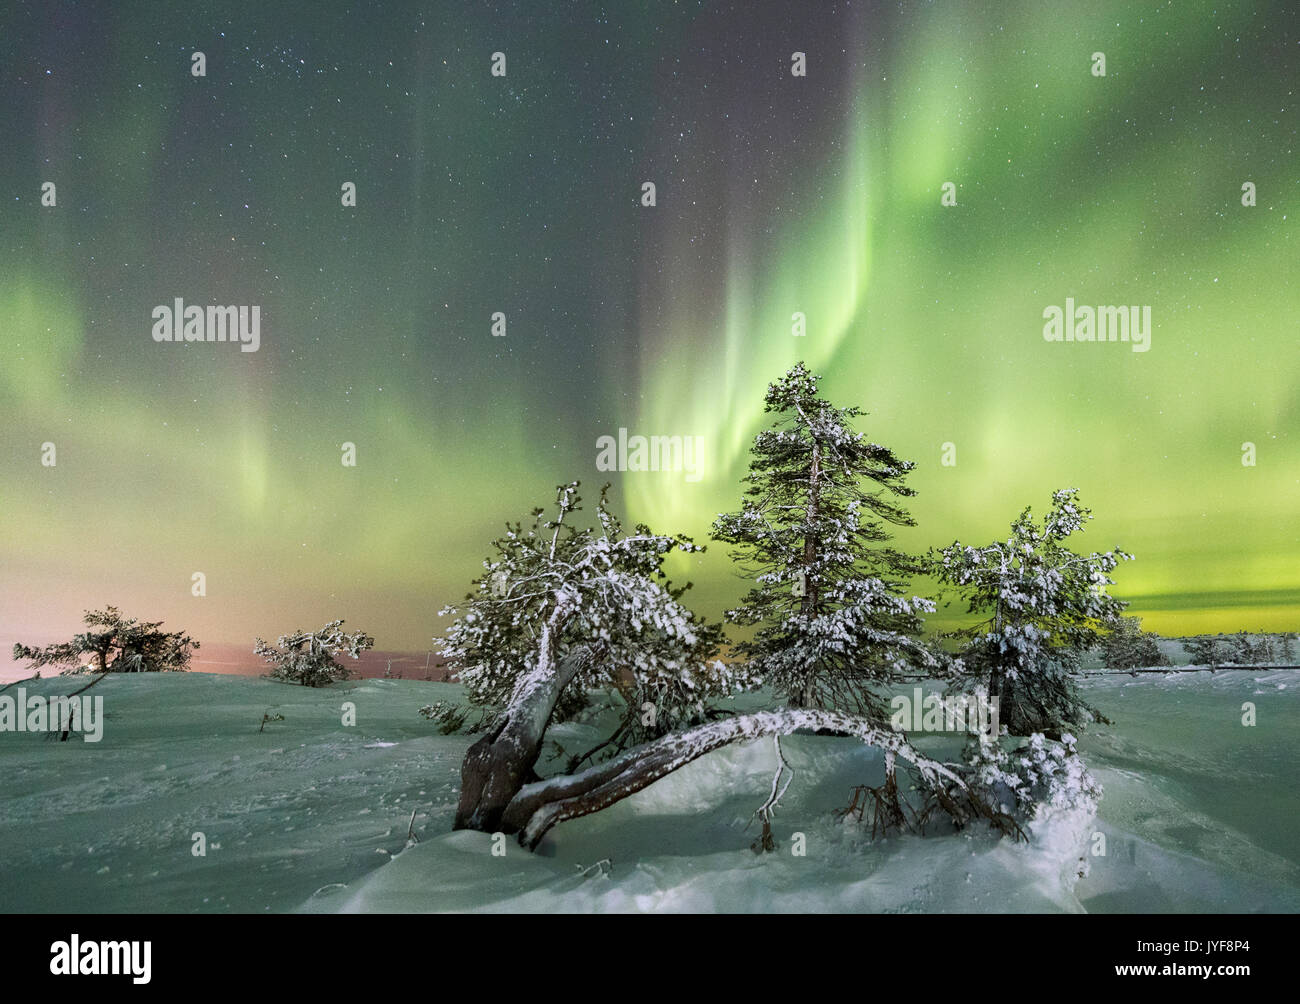 Northern Lights et ciel étoilé sur le paysage enneigé et l'arbres gelés Levi Sirkka Kittilä Laponie région Europe Finlande Banque D'Images